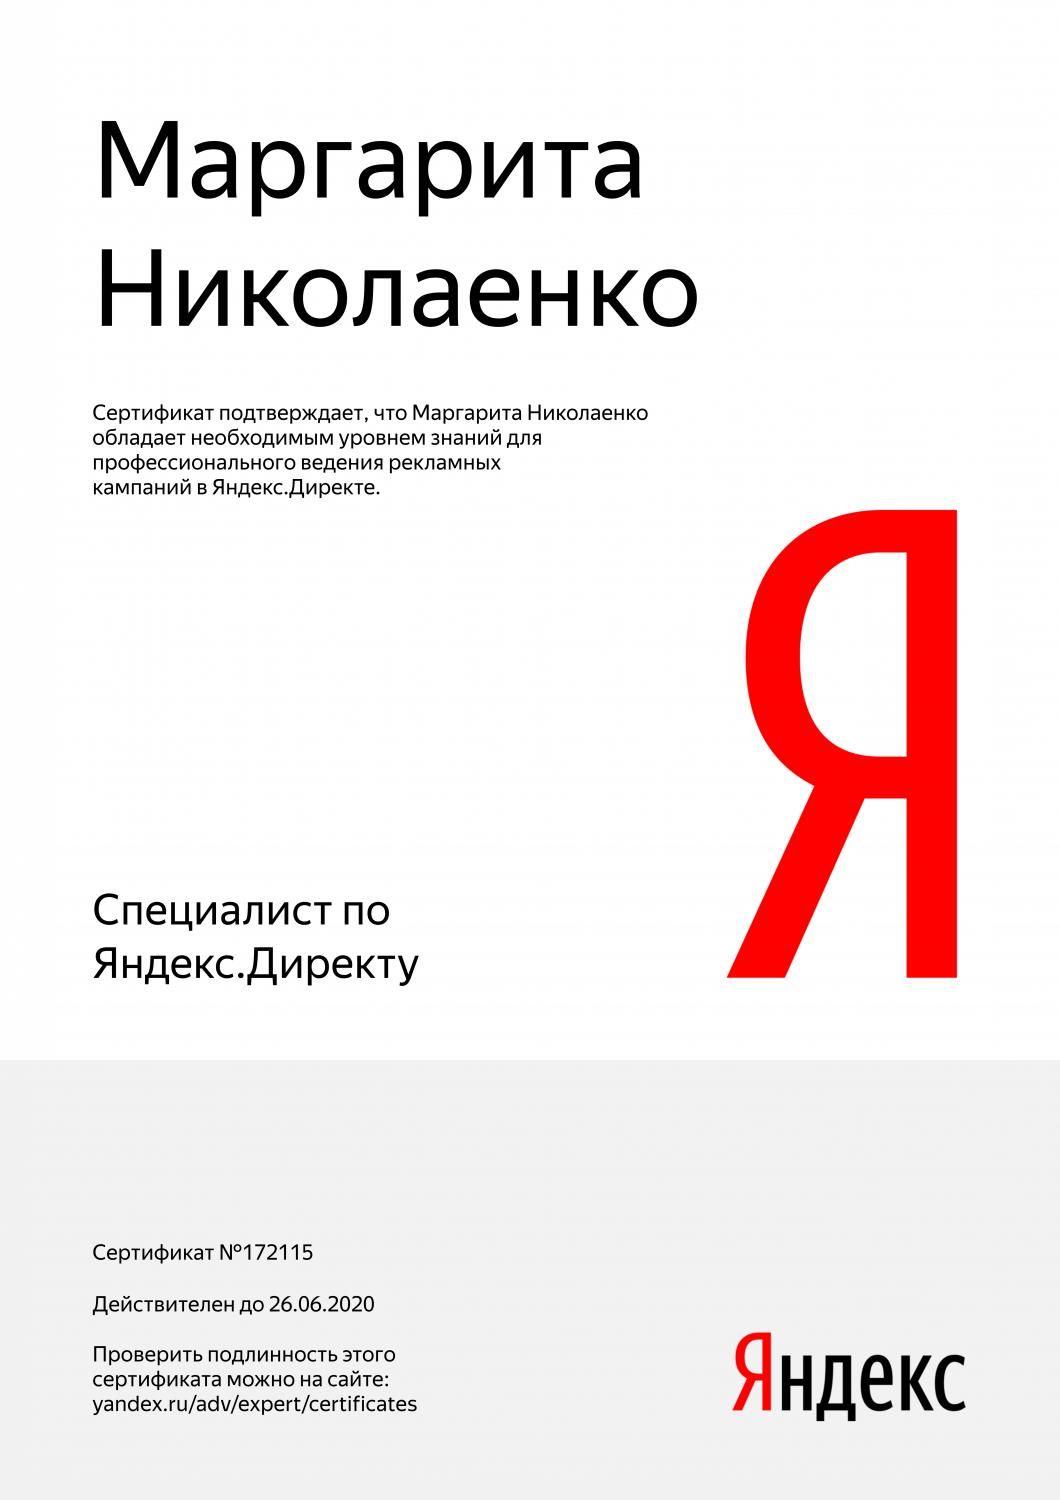 Сертификат специалиста Яндекс. Директ - Николаенко М. в Новокузнецка